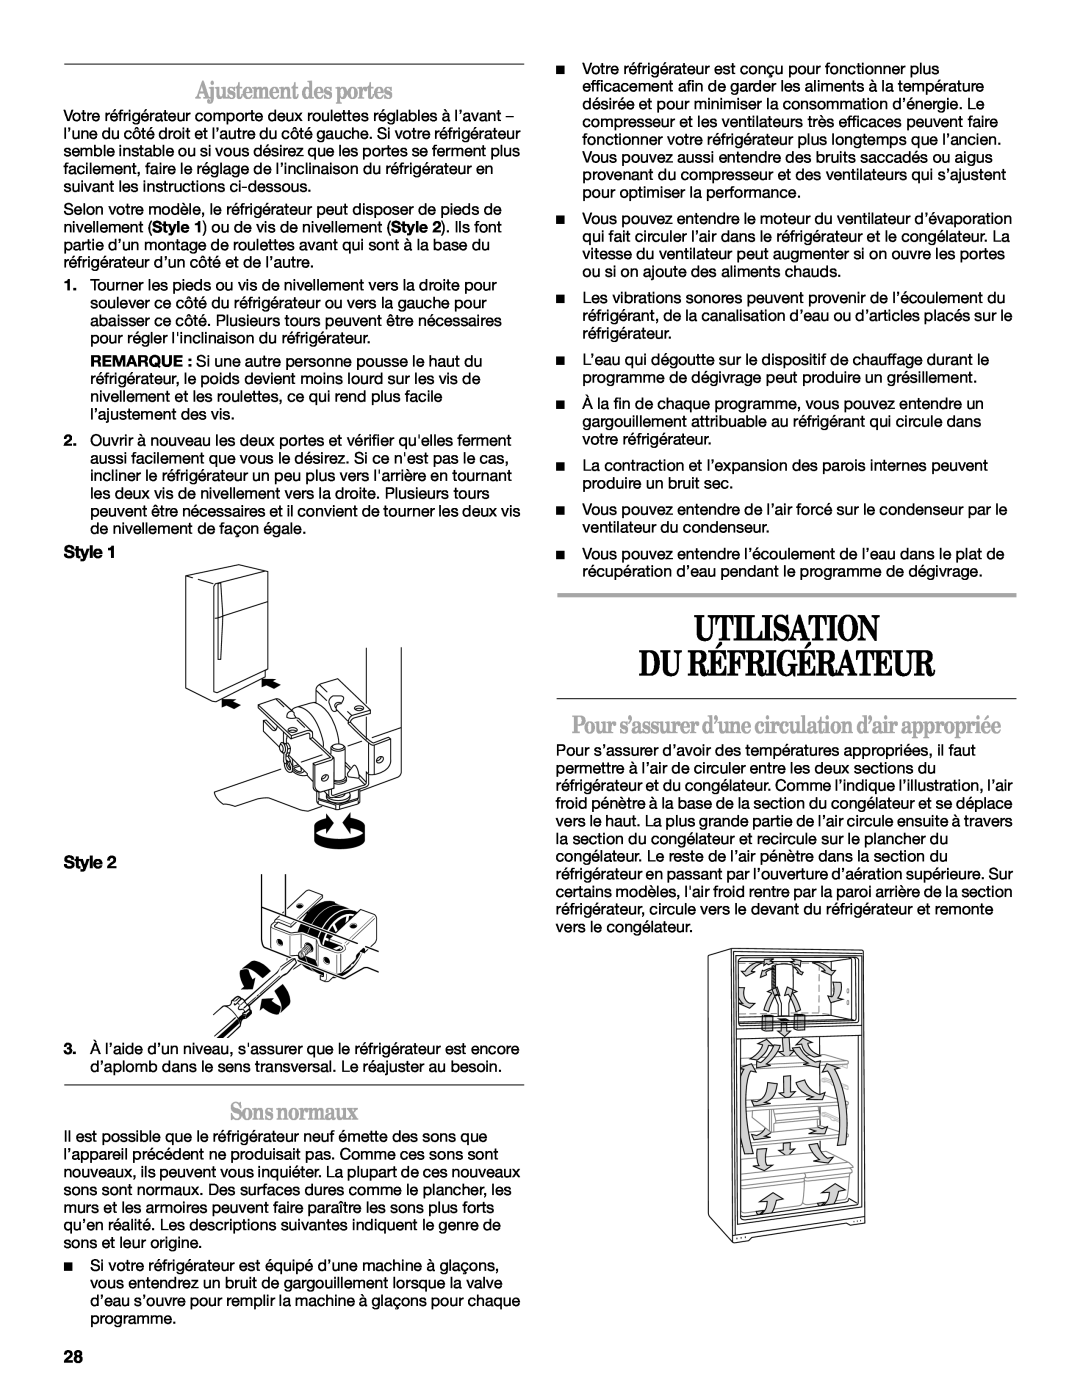 Amana W10162526A manual Utilisation Du Réfrigérateur, Ajustement desportes, Sonsnormaux, Style Style 